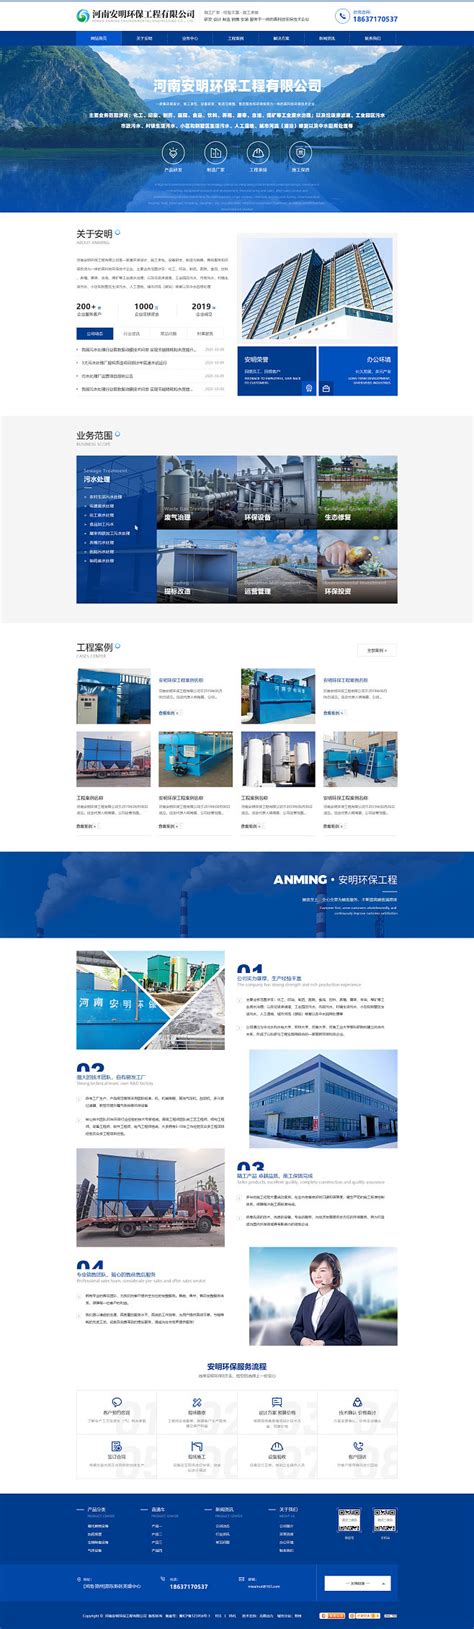 营销型网站蓝色环保网站企业网站定制设计_祁朝仁_【68Design】